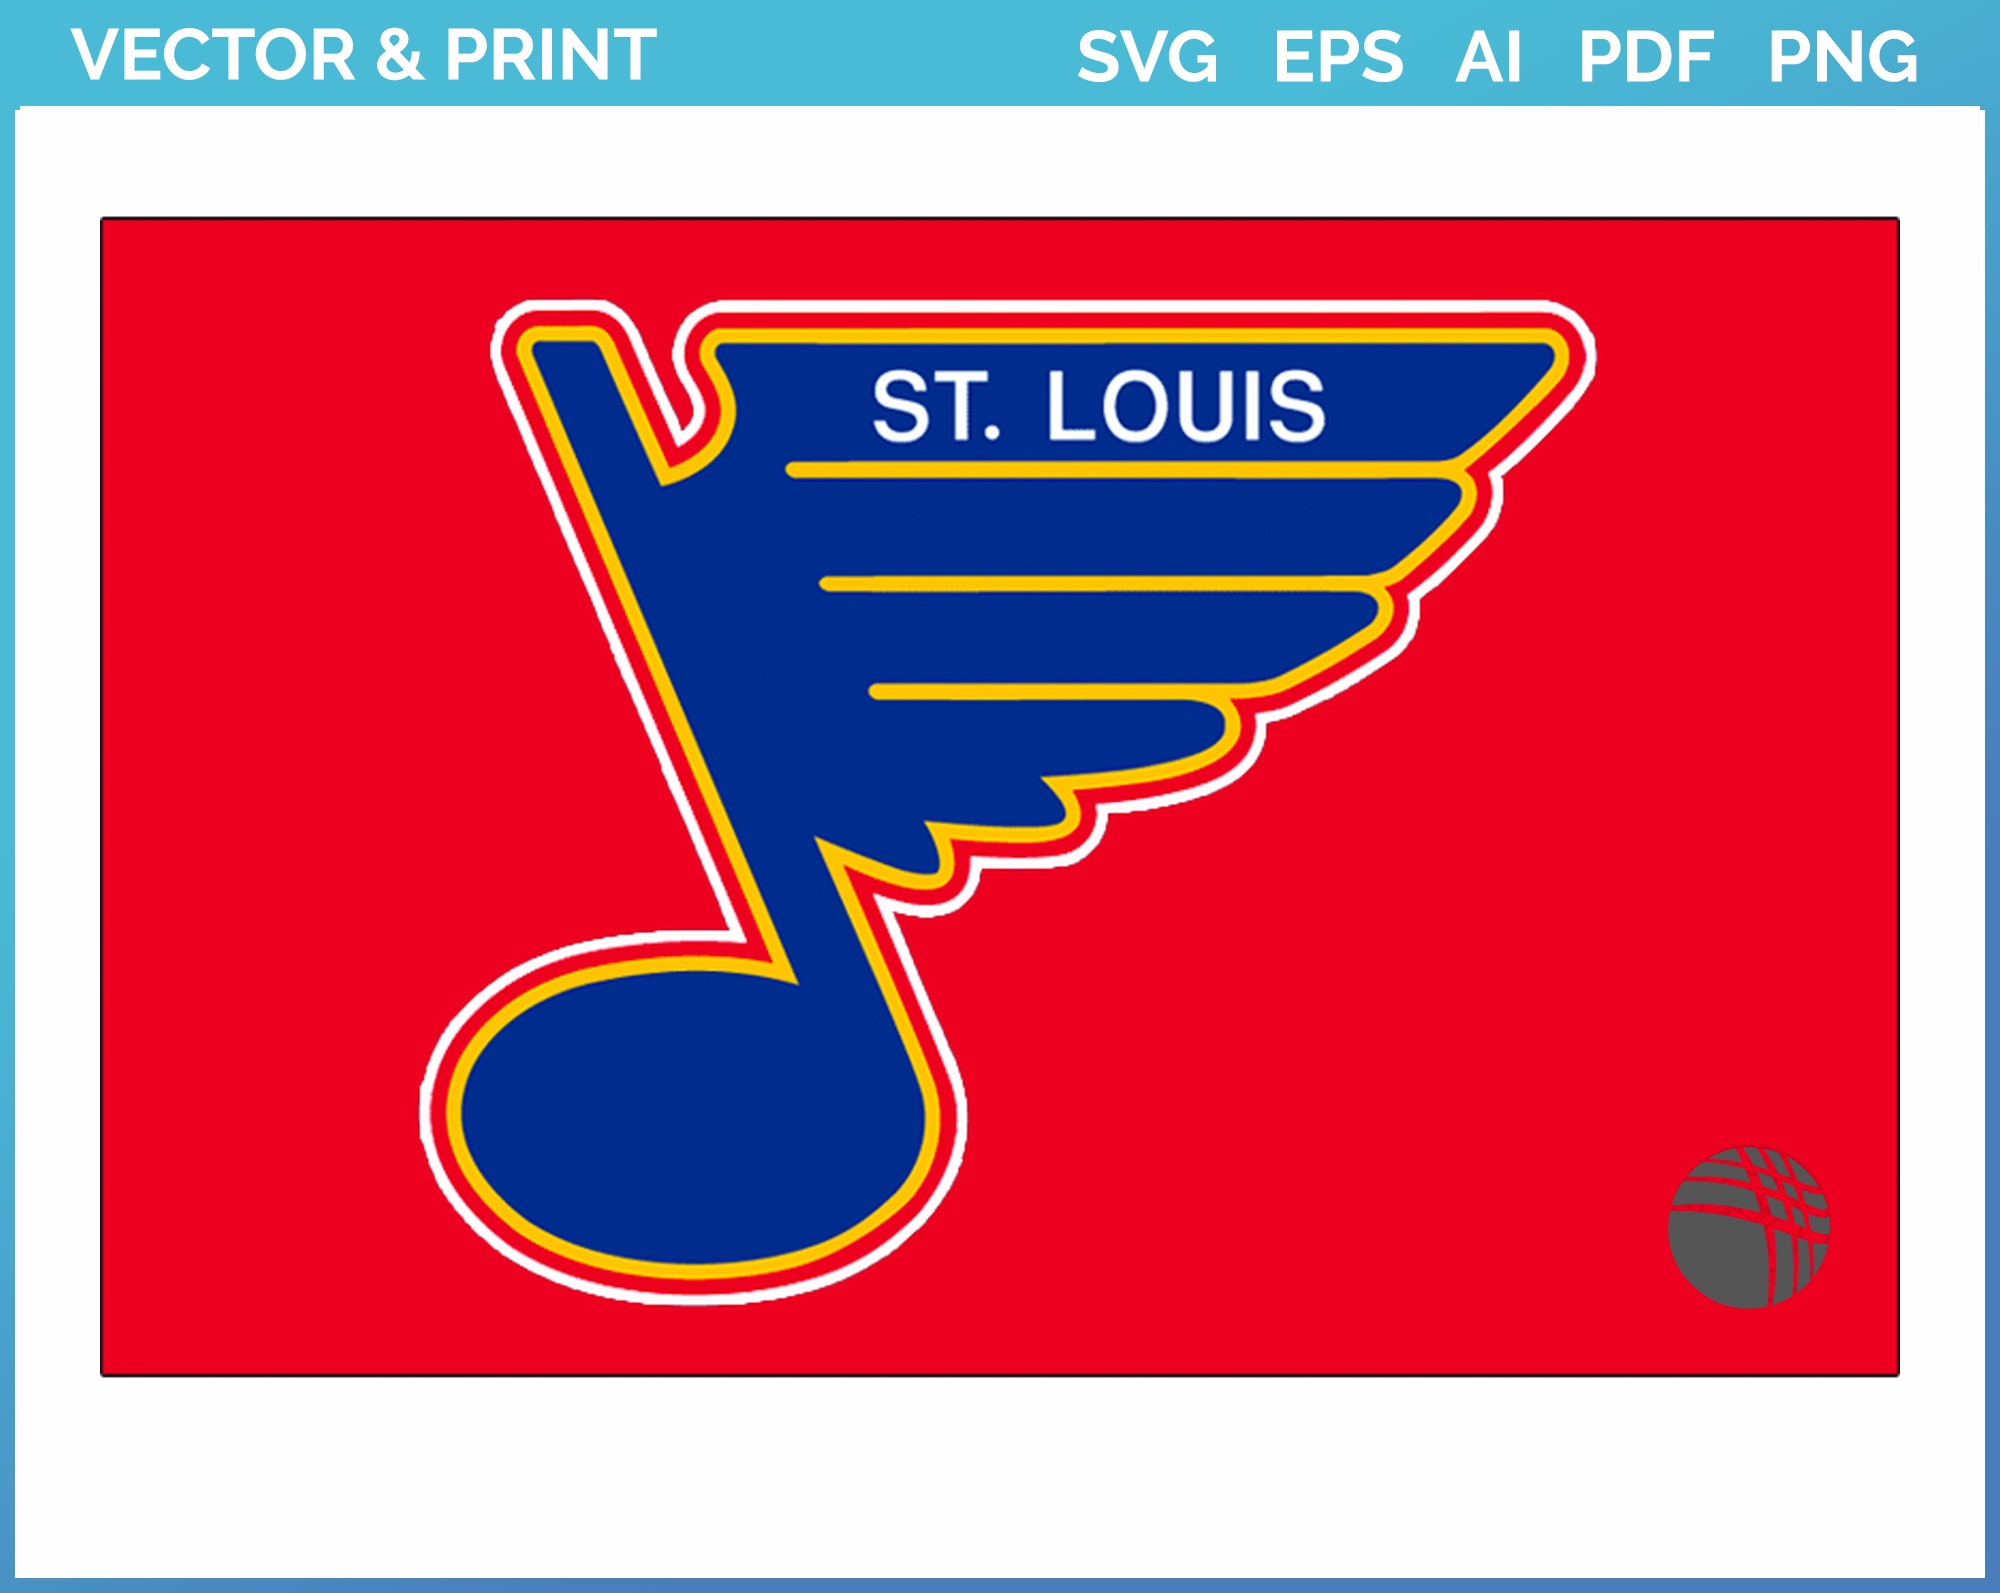 St. Louis Blues Alternate Logo SVG - Free Sports Logo Downloads